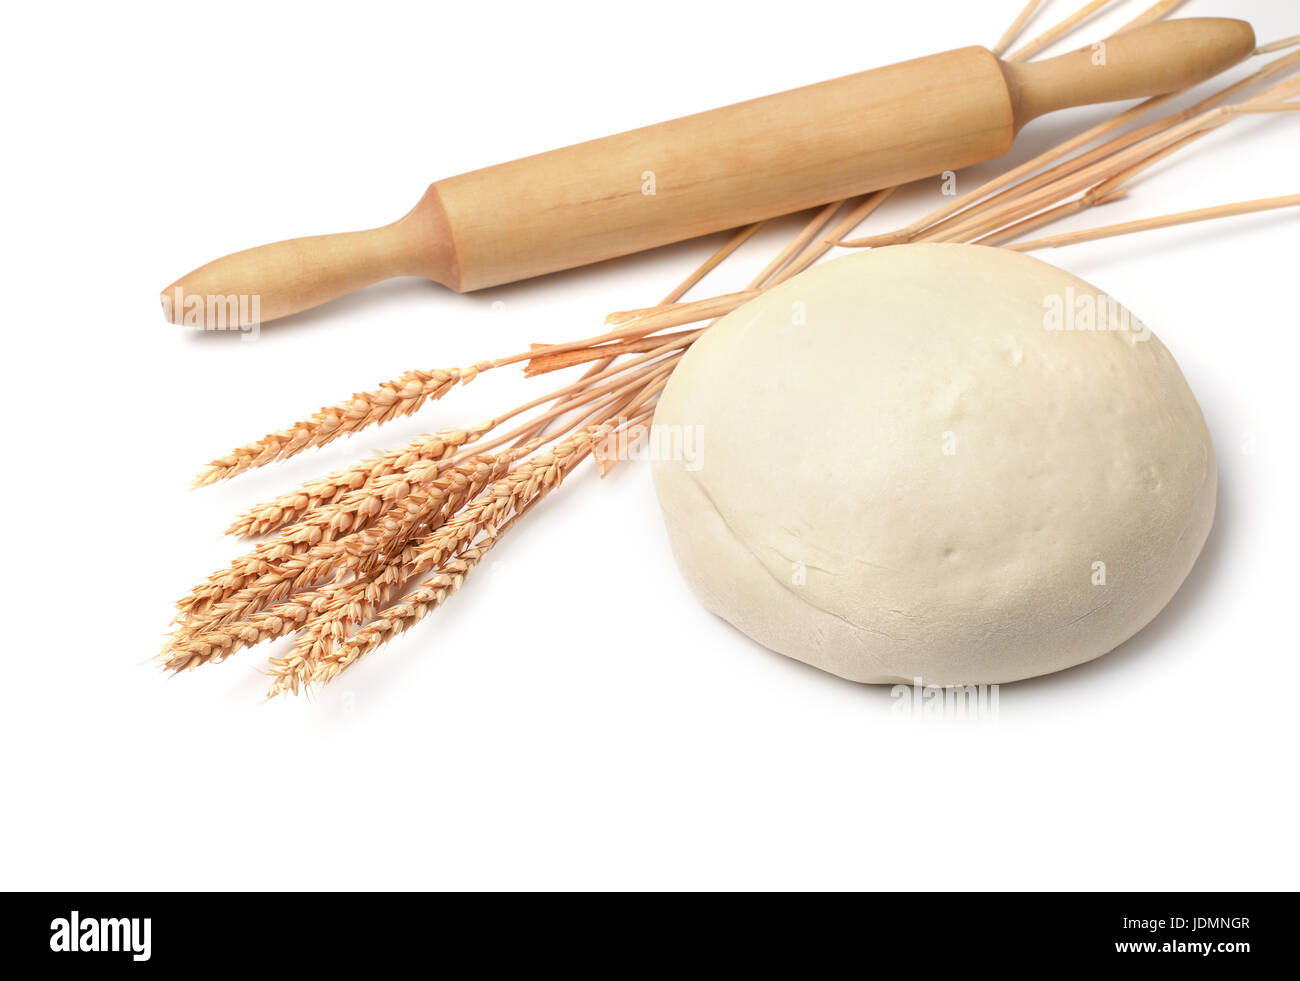 Pasta fresca, spighe di grano e matterello isolato su bianco Foto Stock